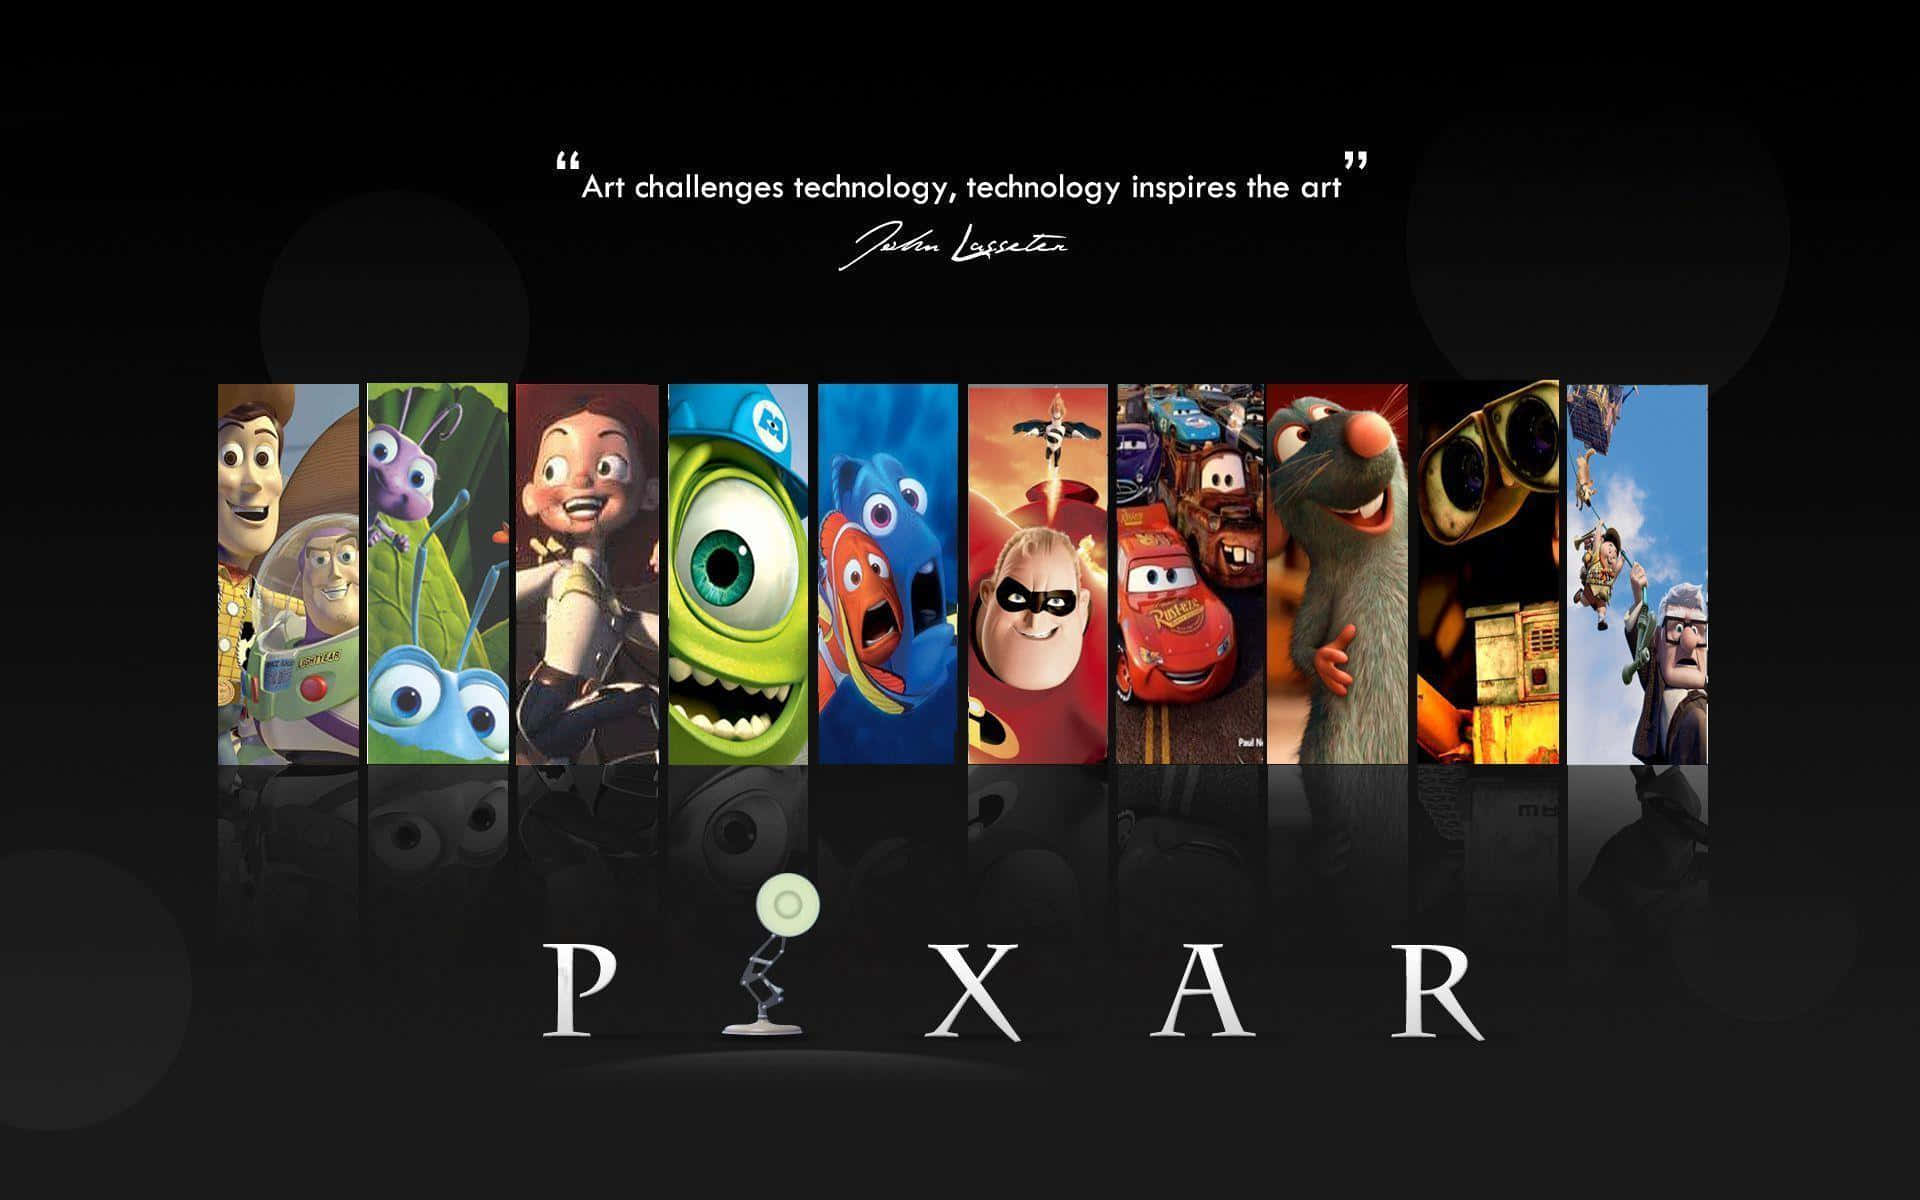 Mejorfondo De Pantalla De Disney Con Varios Personajes De Pixar.